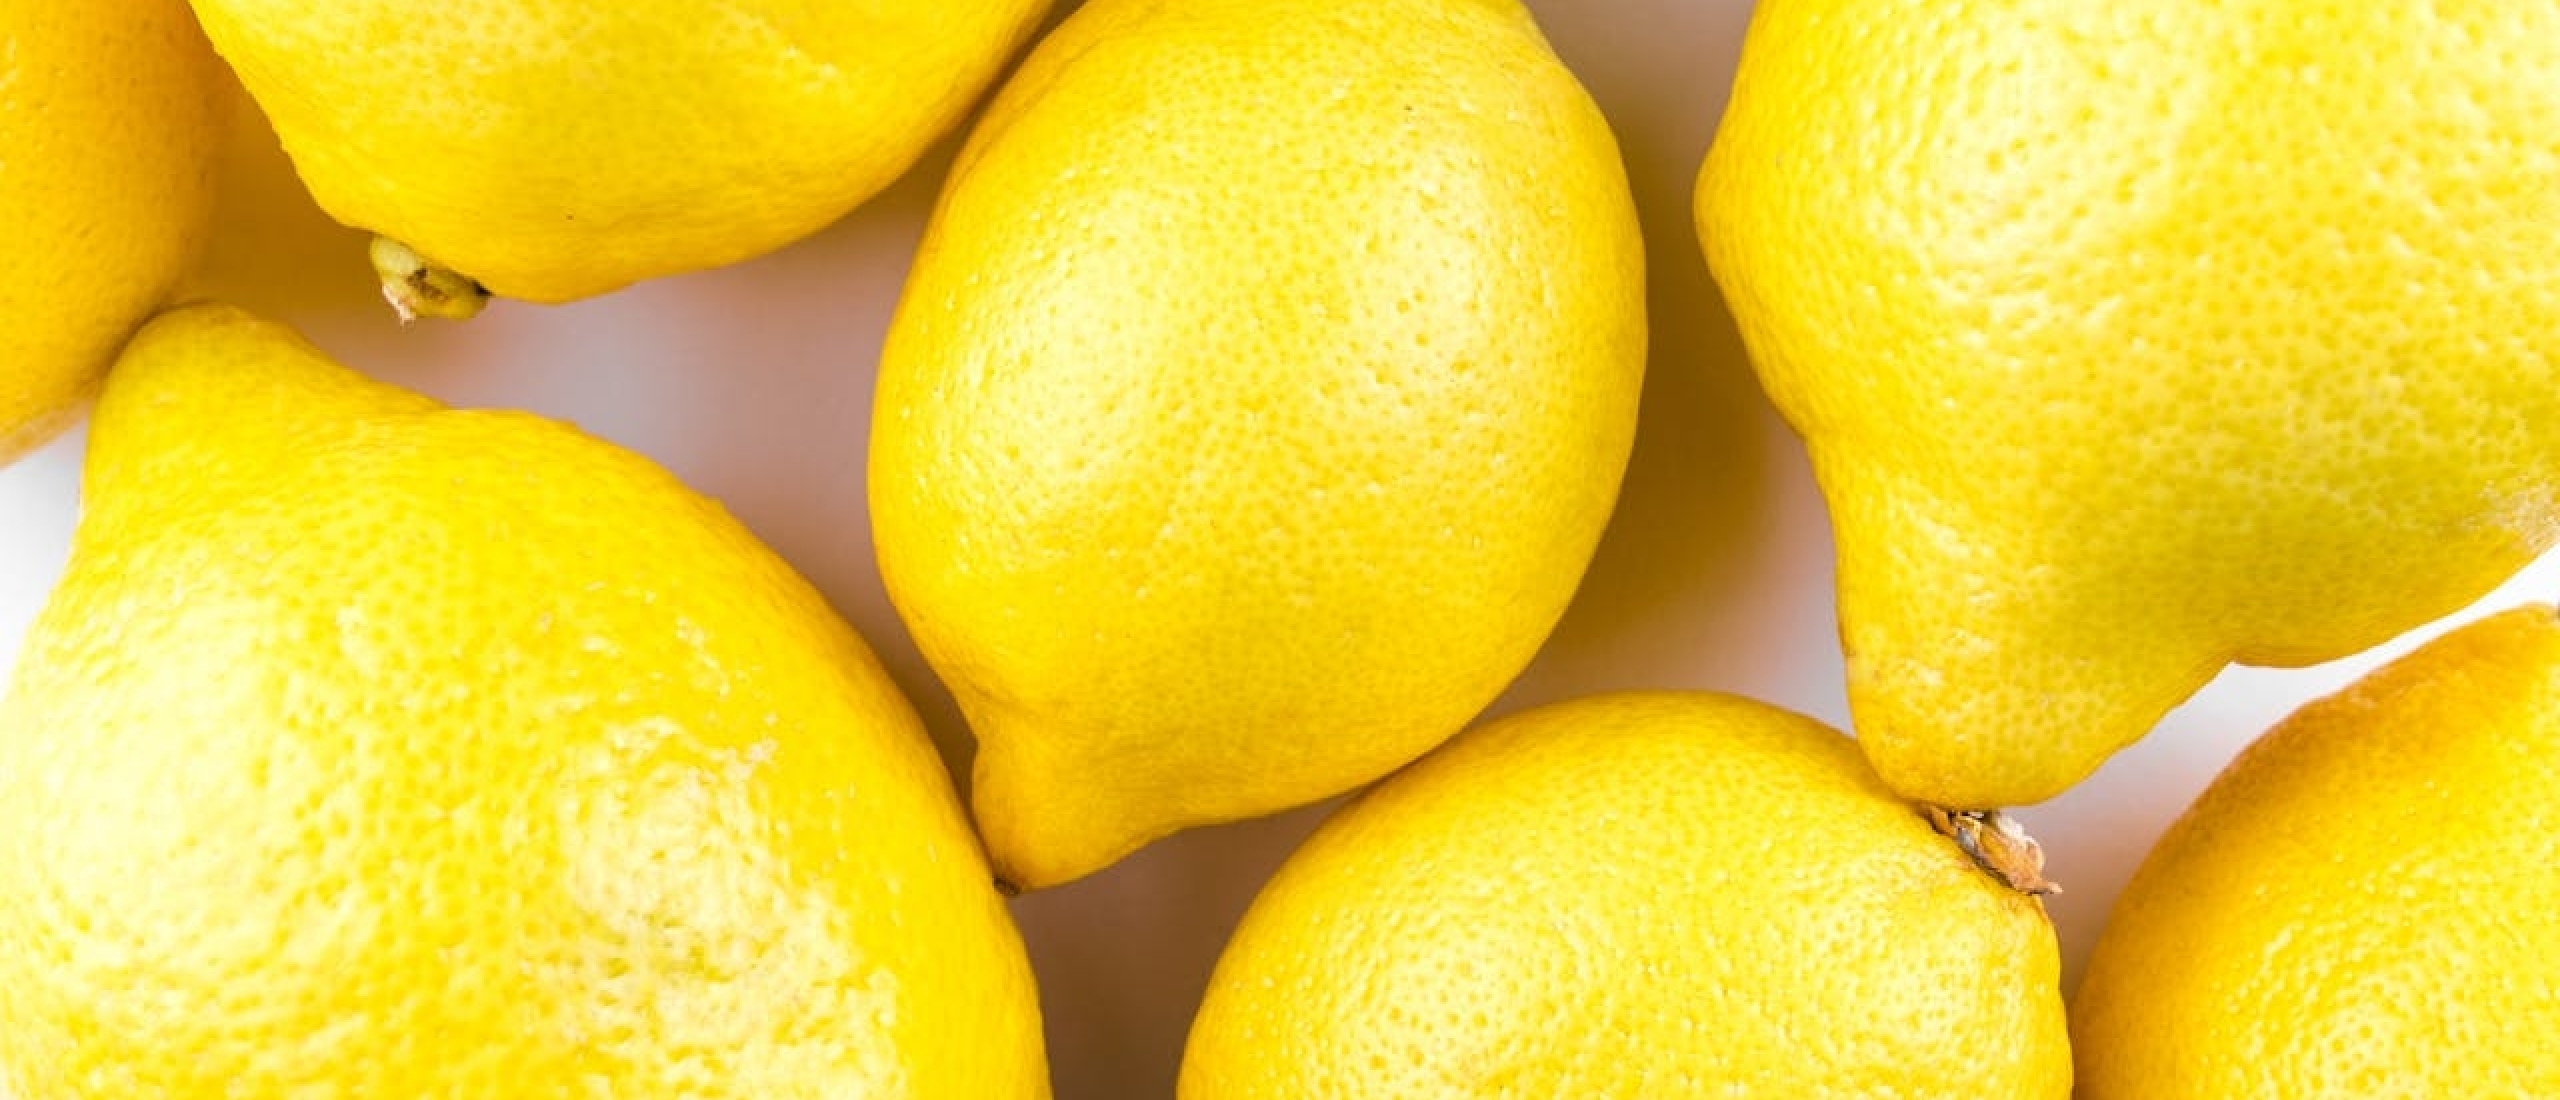 Waarom citroenen extreem gezond zijn - Gezondheid.nl